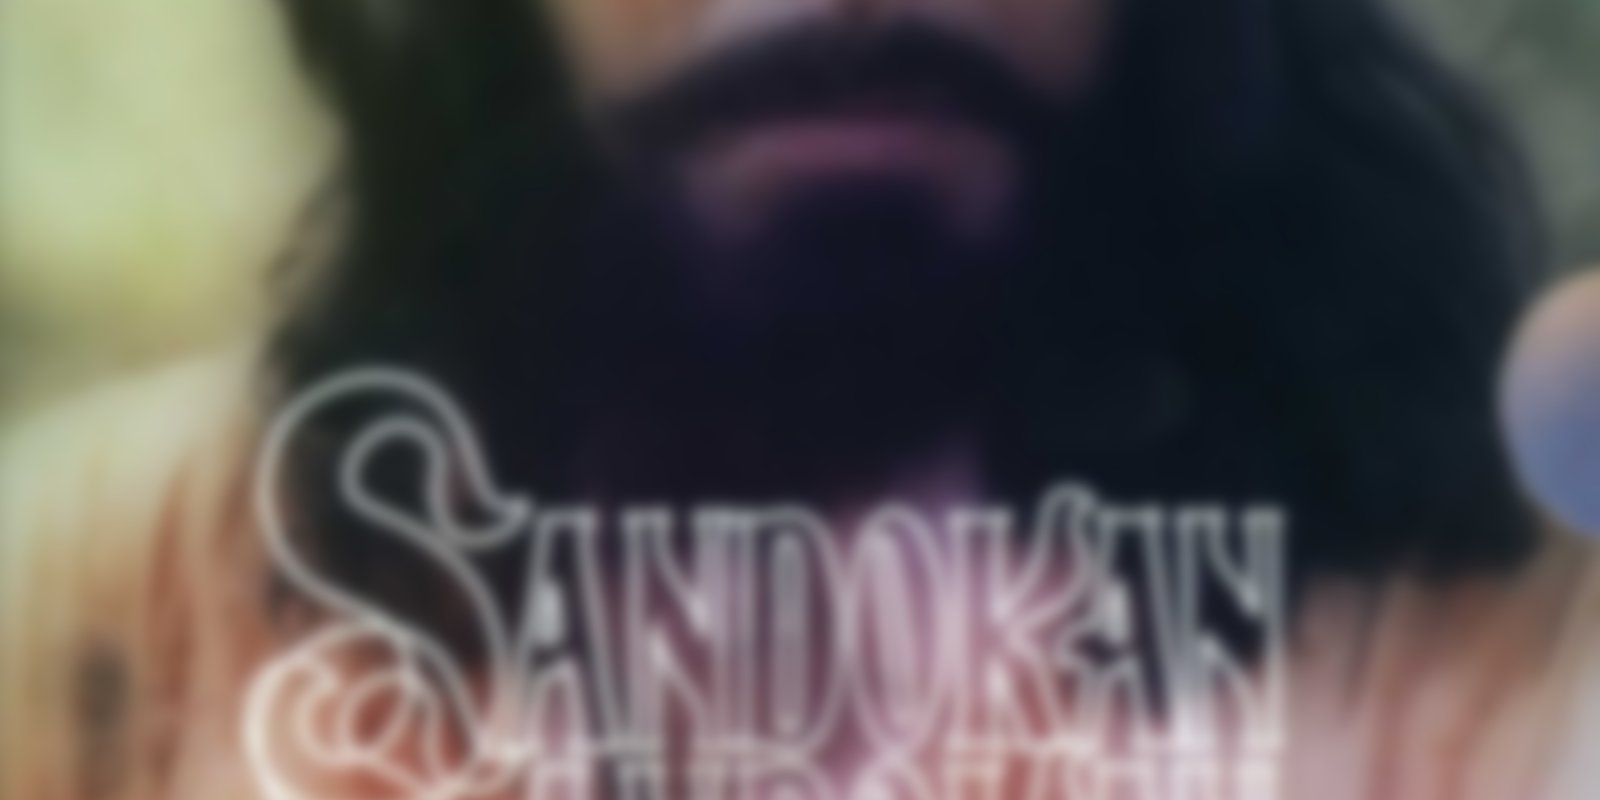 Sandokan - Die Rückkehr des Sandokan